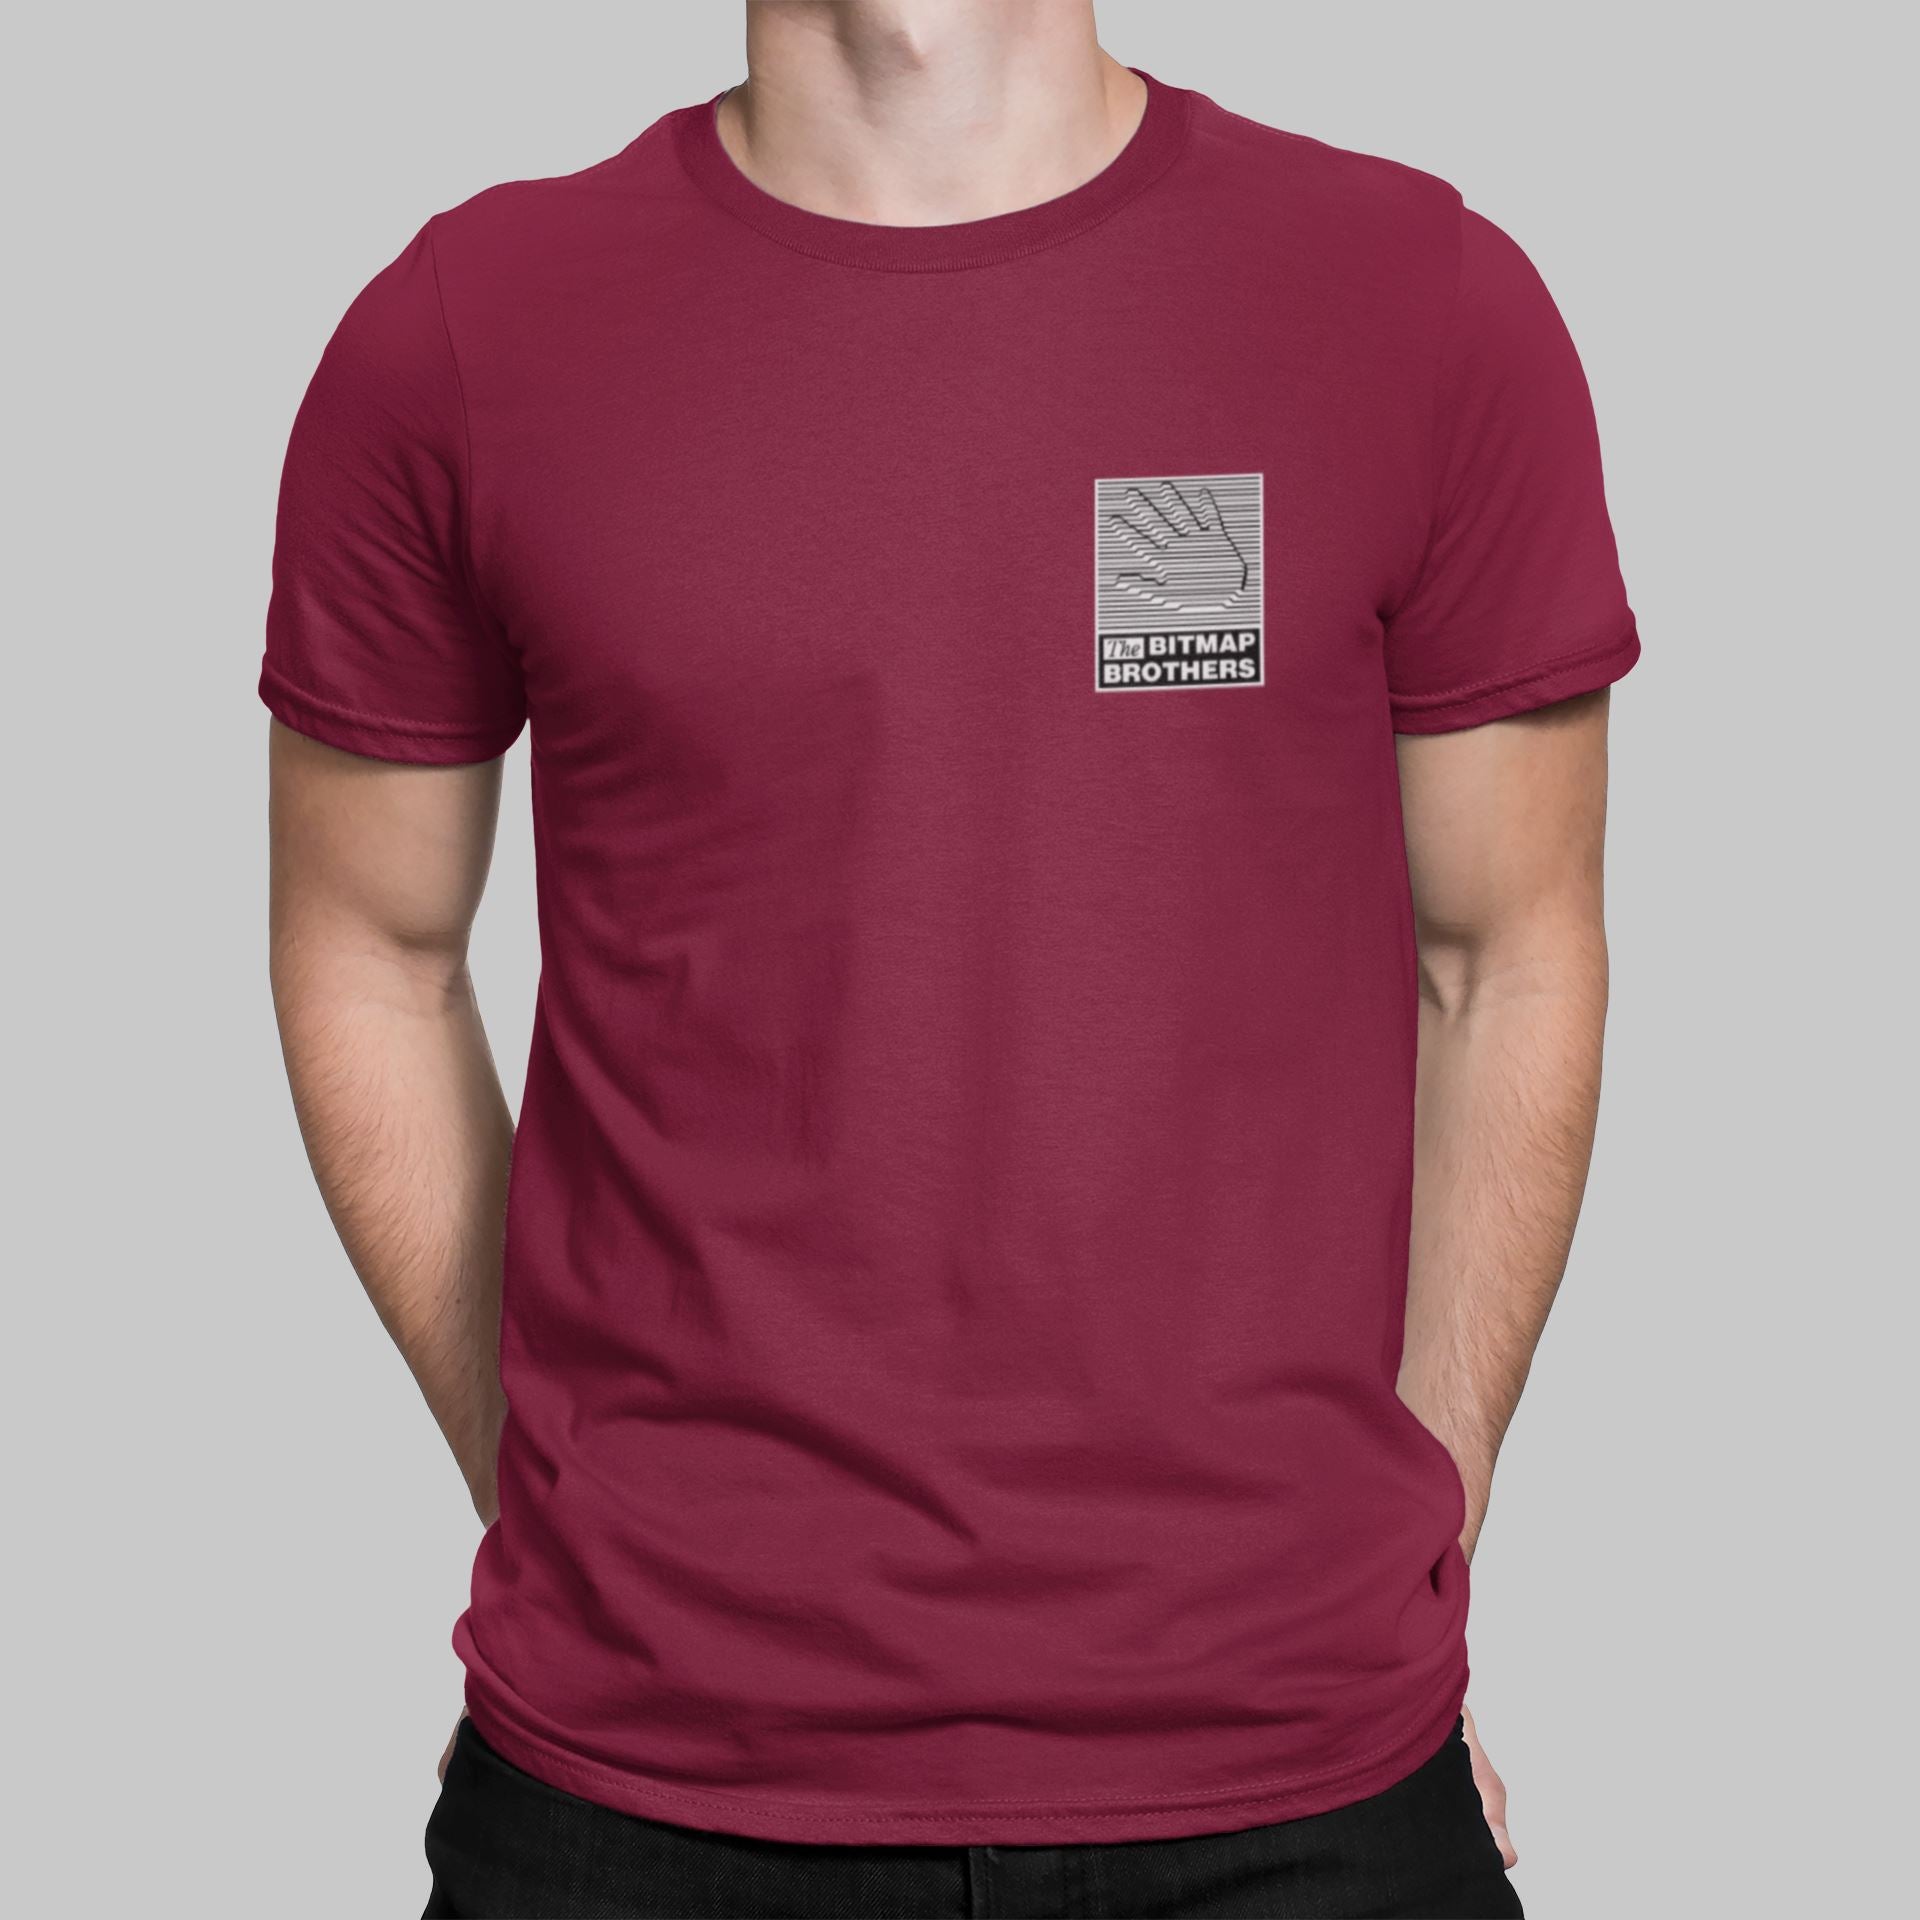 Bitmap Brothers Pocket Print Retro Gaming T-Shirt T-Shirt Seven Squared Small 34-36" Cardinal Red 